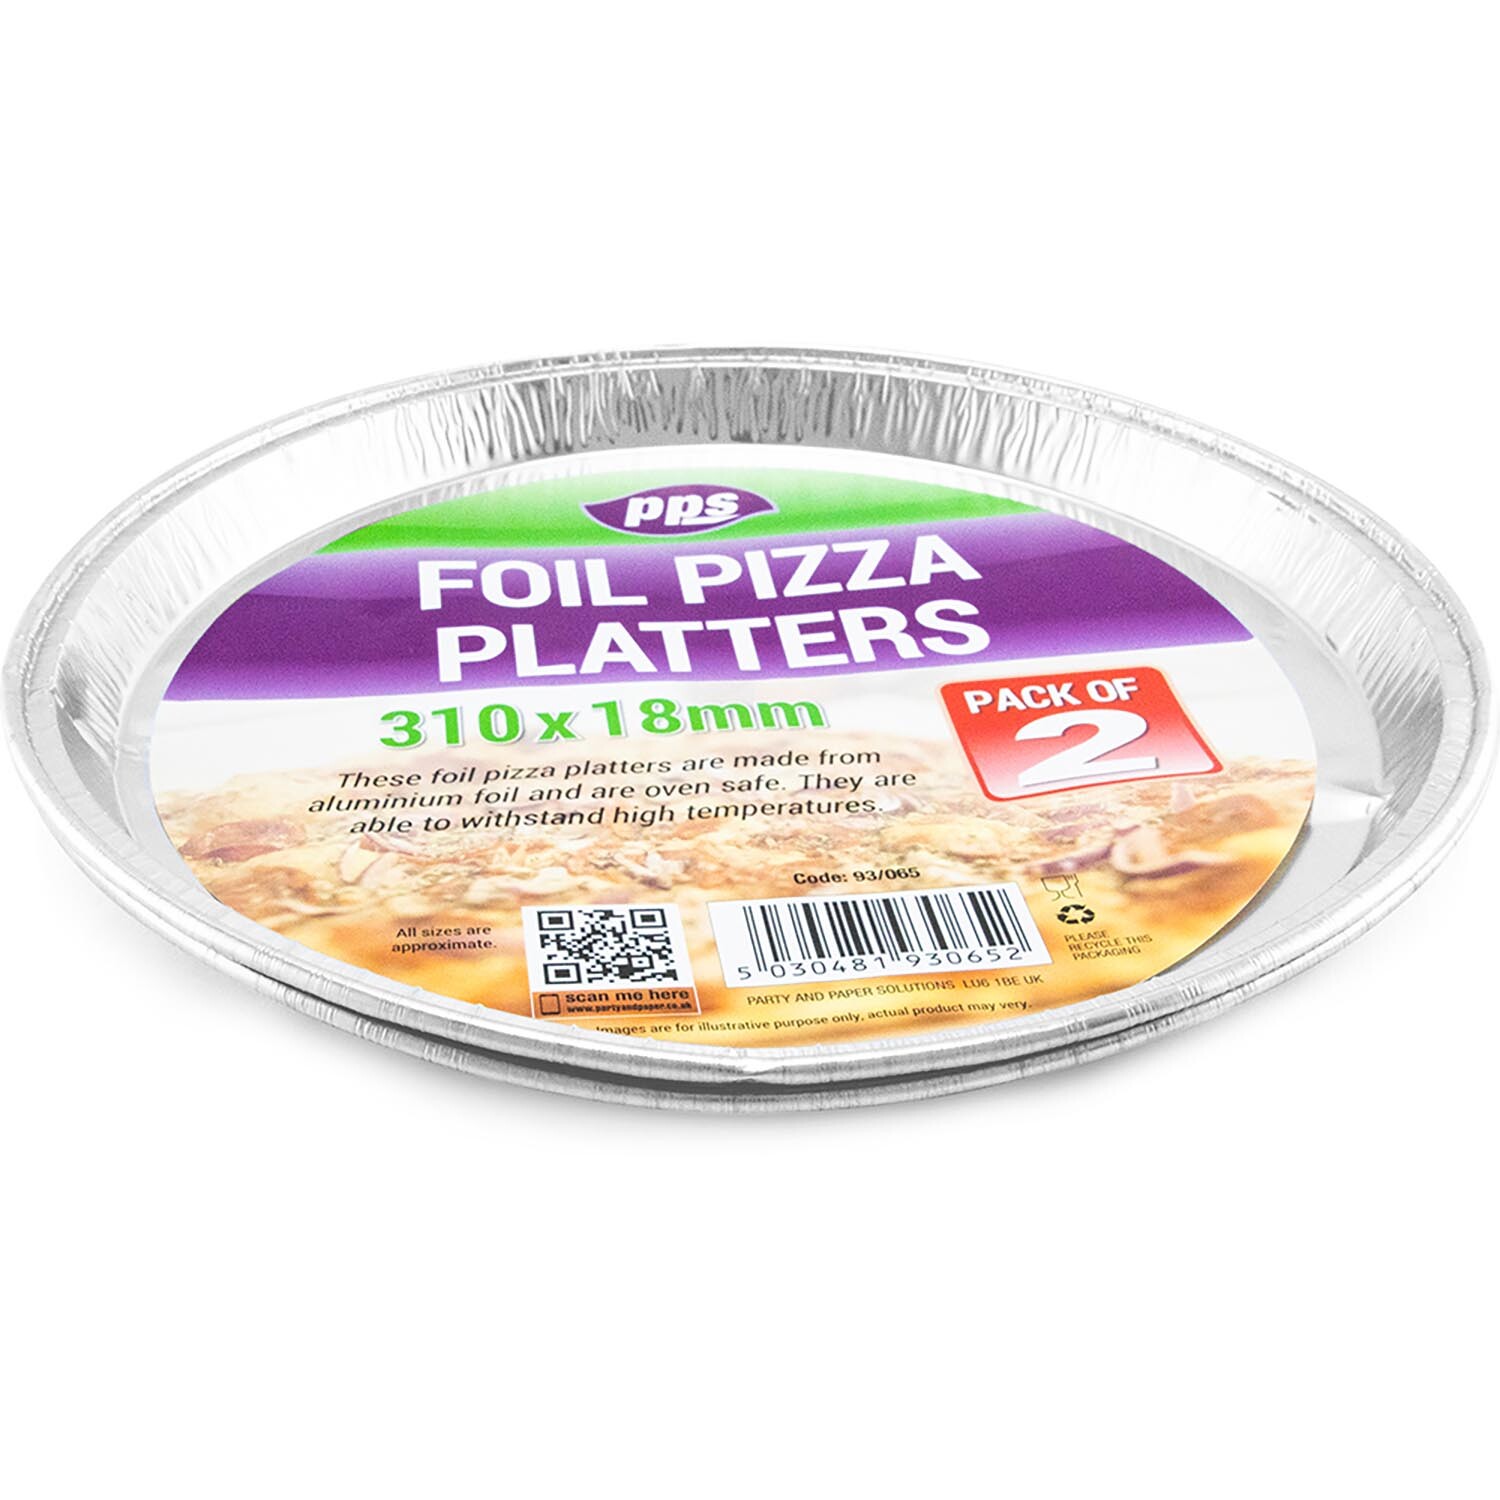 Foil Pizza Platters 2 Pack Image